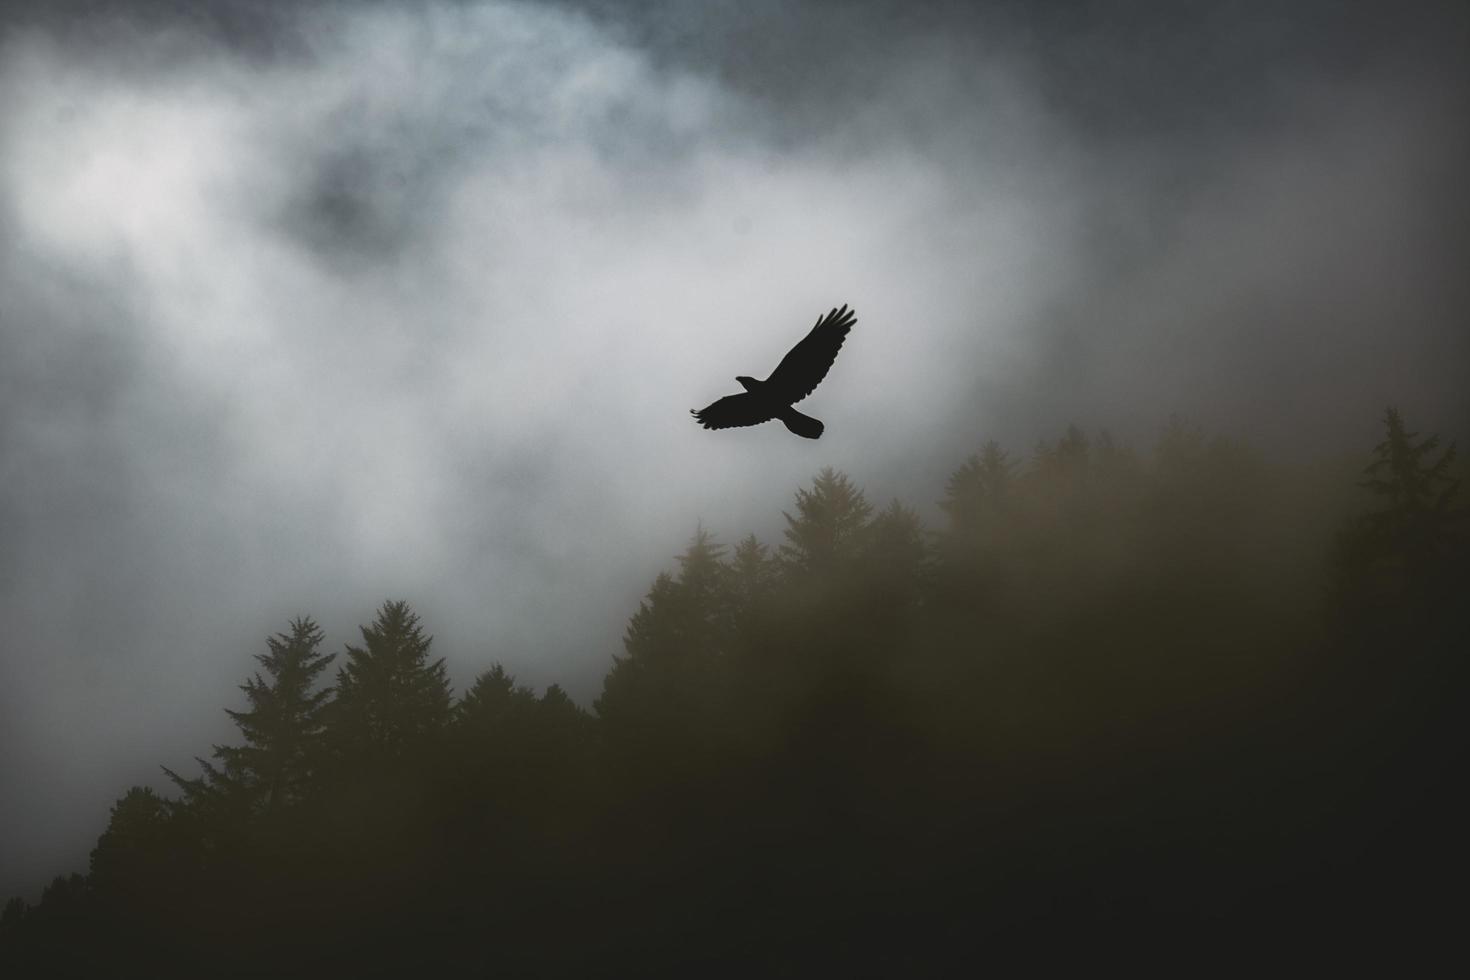 uccello che vola sopra il paesaggio nebbioso foto